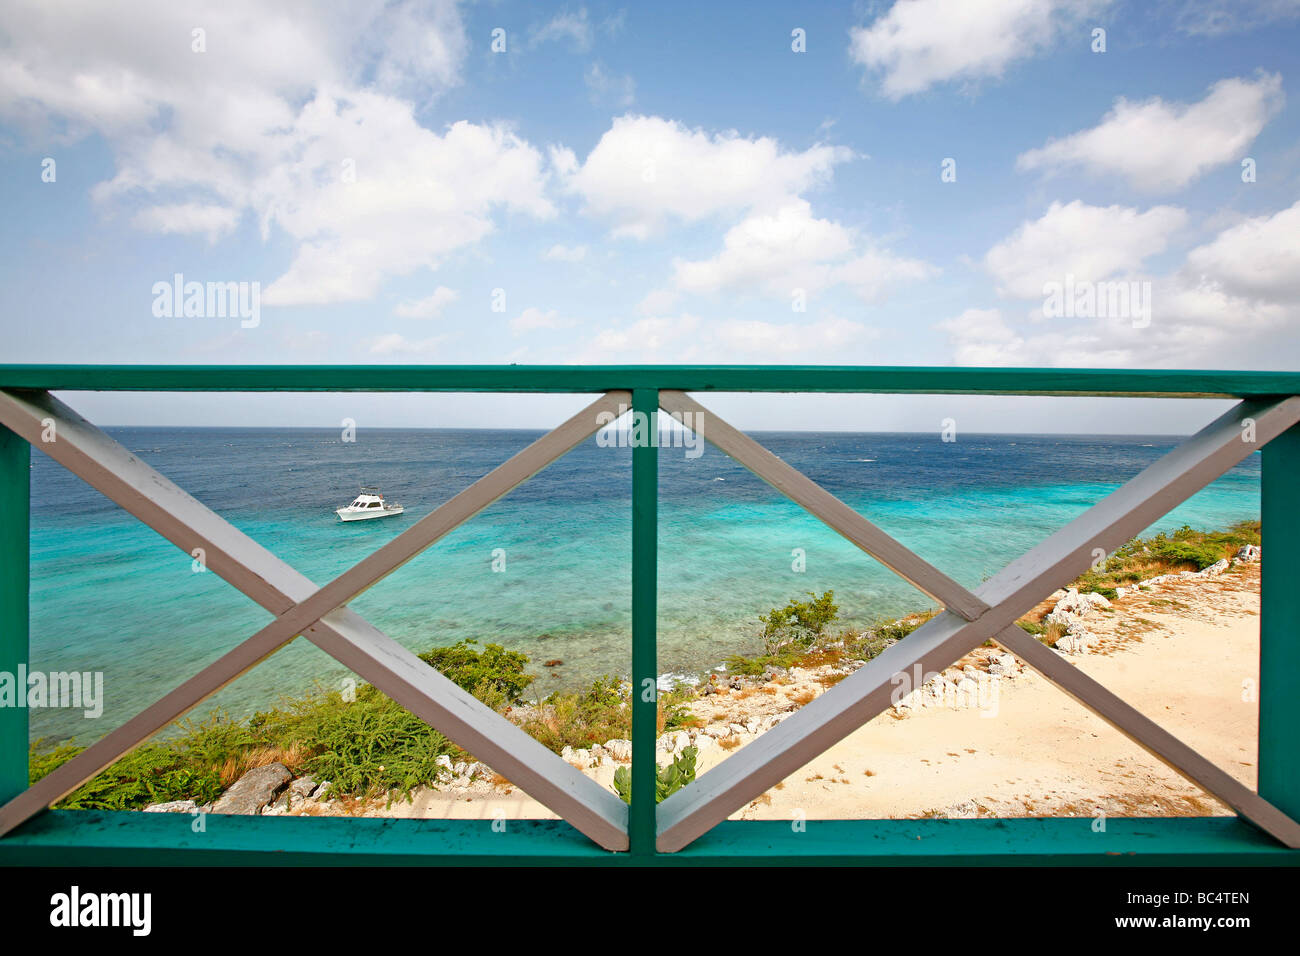 Barrière en bois à un balcon à l'île des Caraïbes Curaçao dans les Antilles néerlandaises Banque D'Images